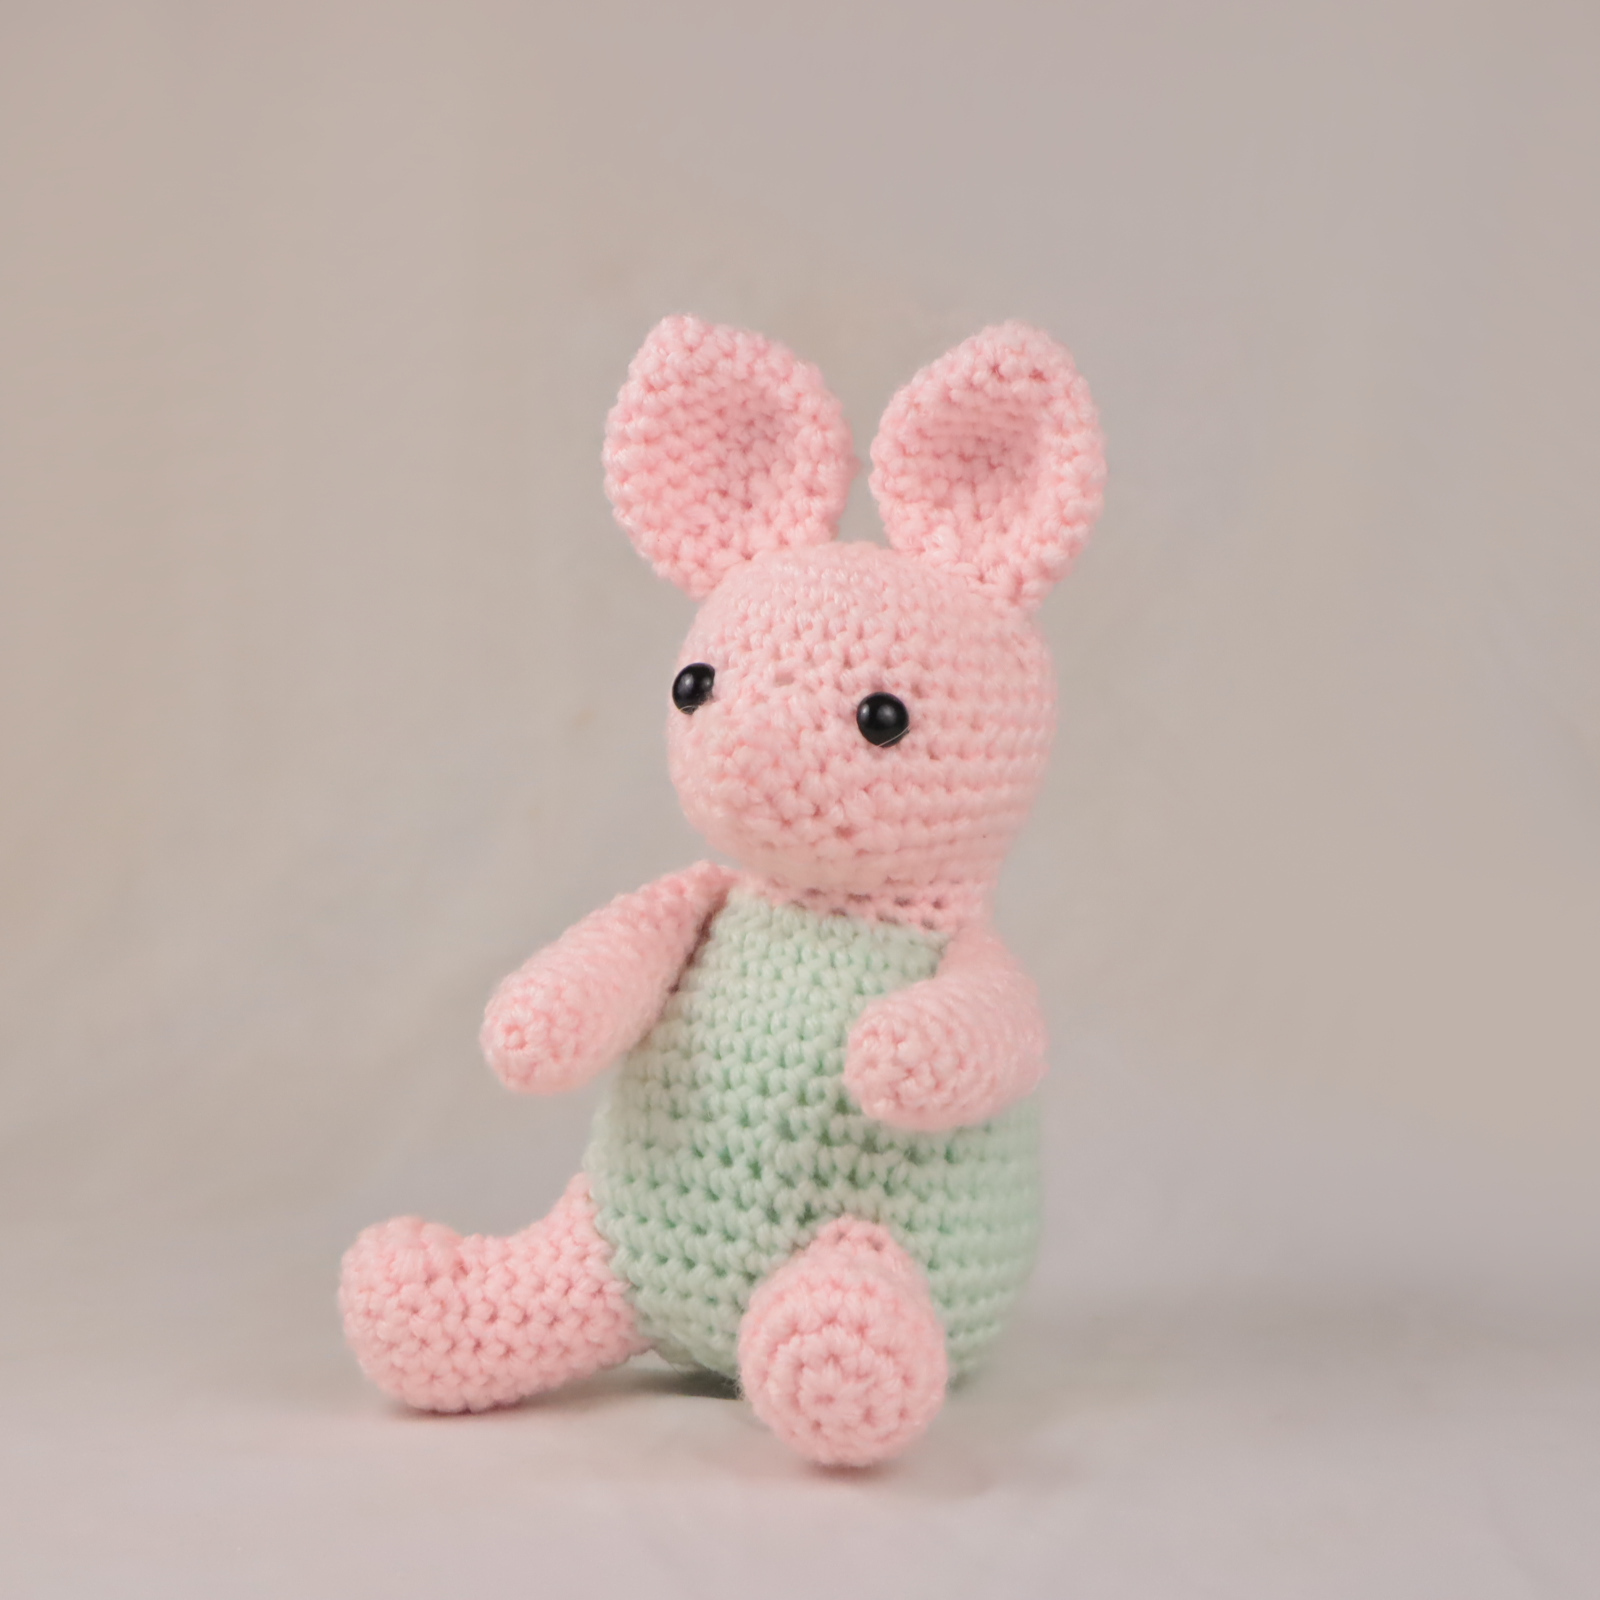 Free classic piglet amigurumi crochet pattern